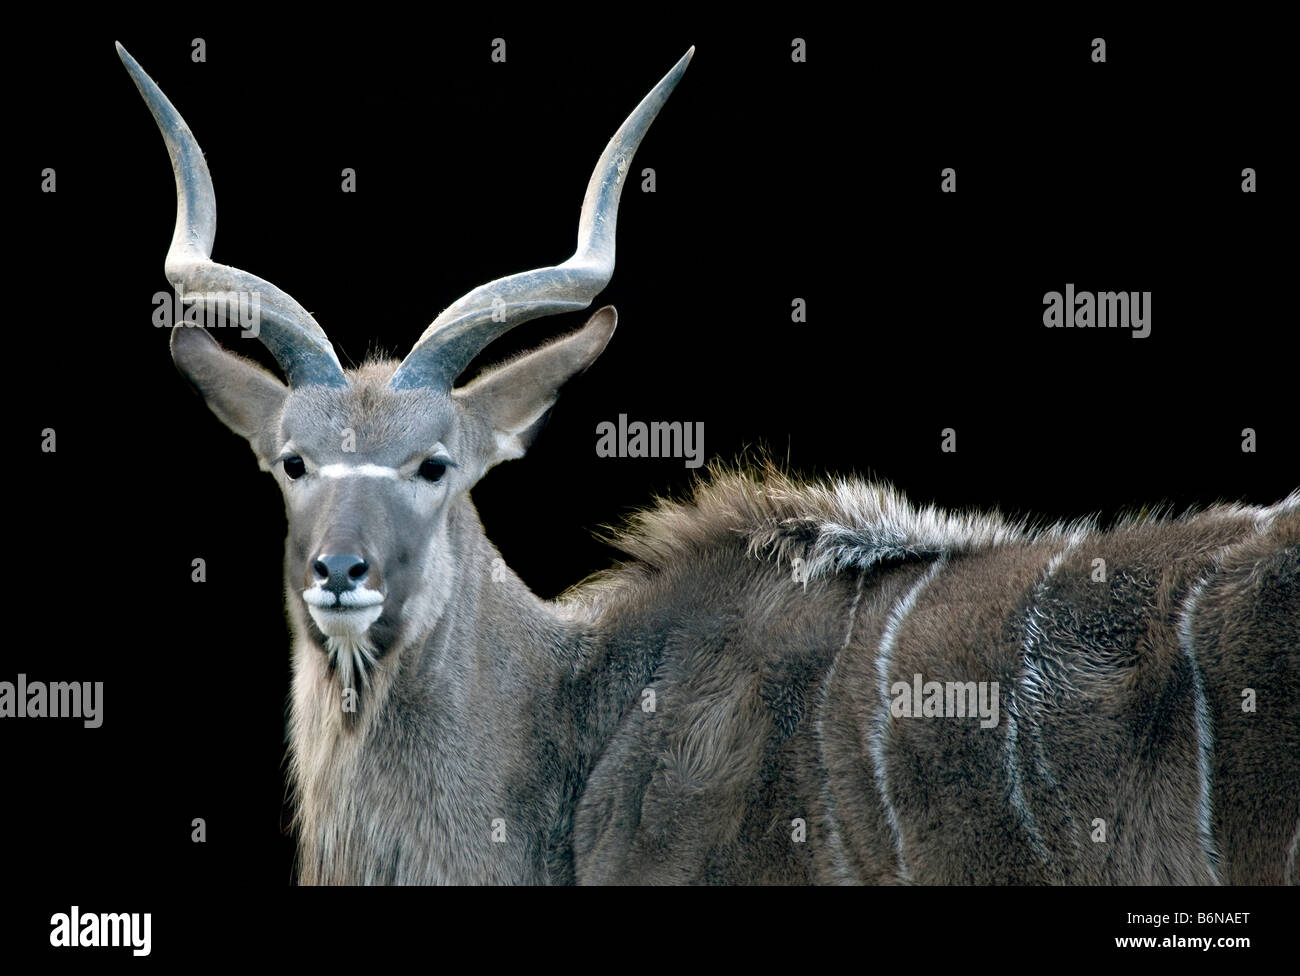 Greater Kudu (Tragelaphus strepsiceros) Stock Photo